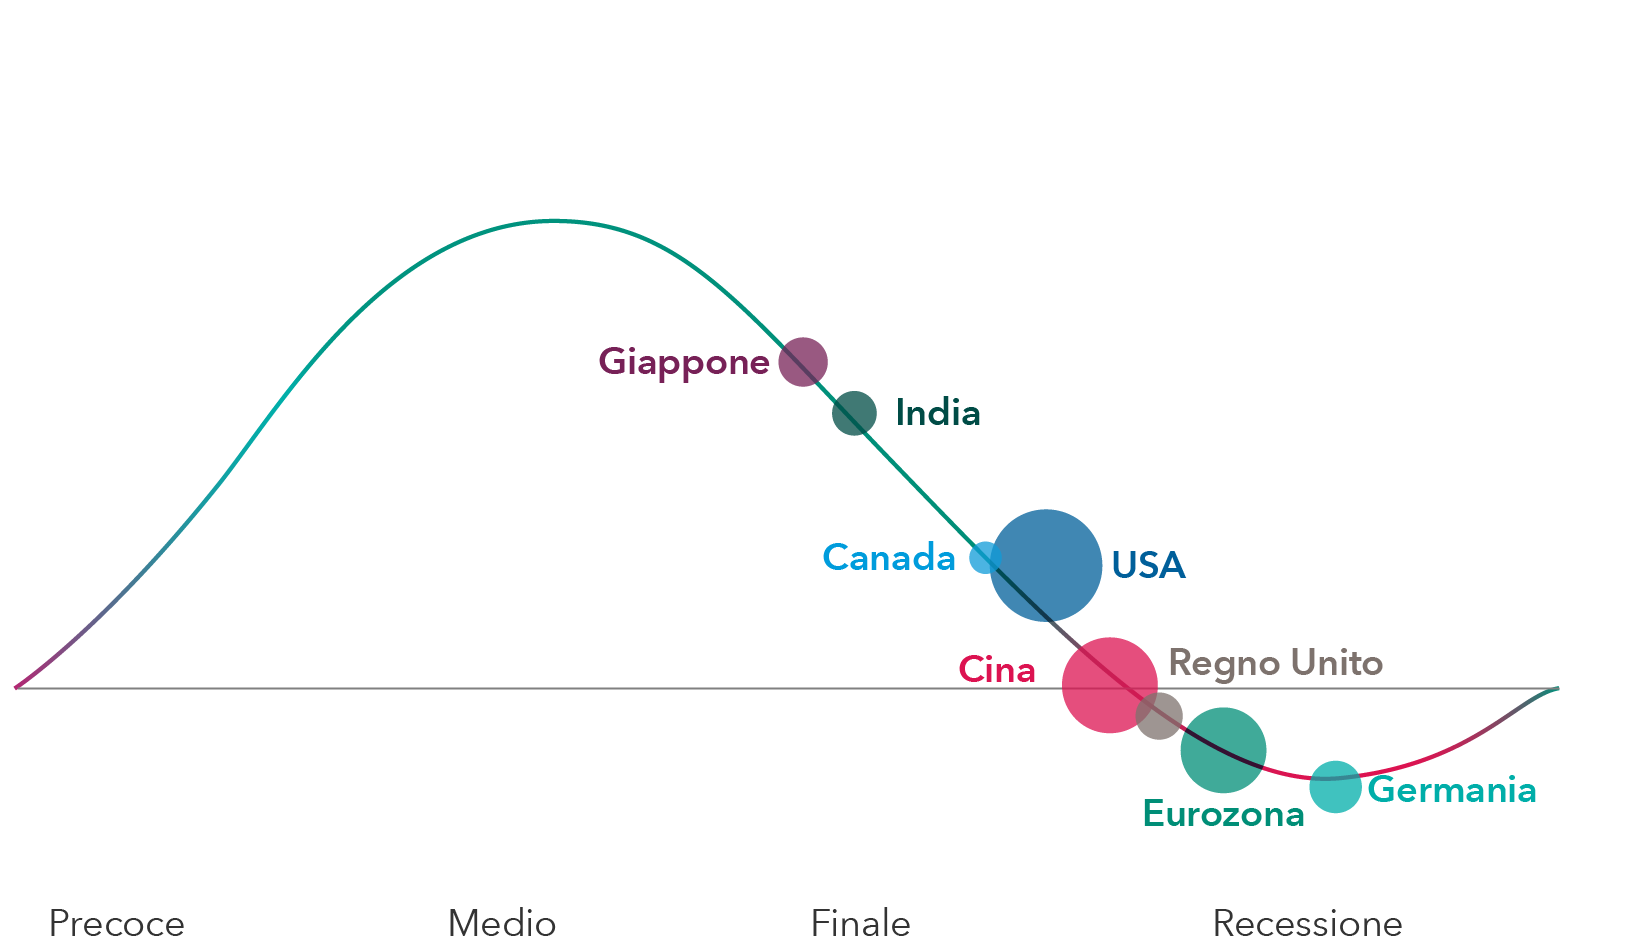 L'immagine mostra un grafico a linee con categorie standard del ciclo economico (precoce, medio, finale e recessione) per otto paesi o regioni principali. Giappone, India, Canada e Stati Uniti si trovano a uno stadio medio-finale del ciclo, la Cina è al confine fra fase finale e recessione, mentre Regno Unito, Eurozona e Germania sono in recessione.